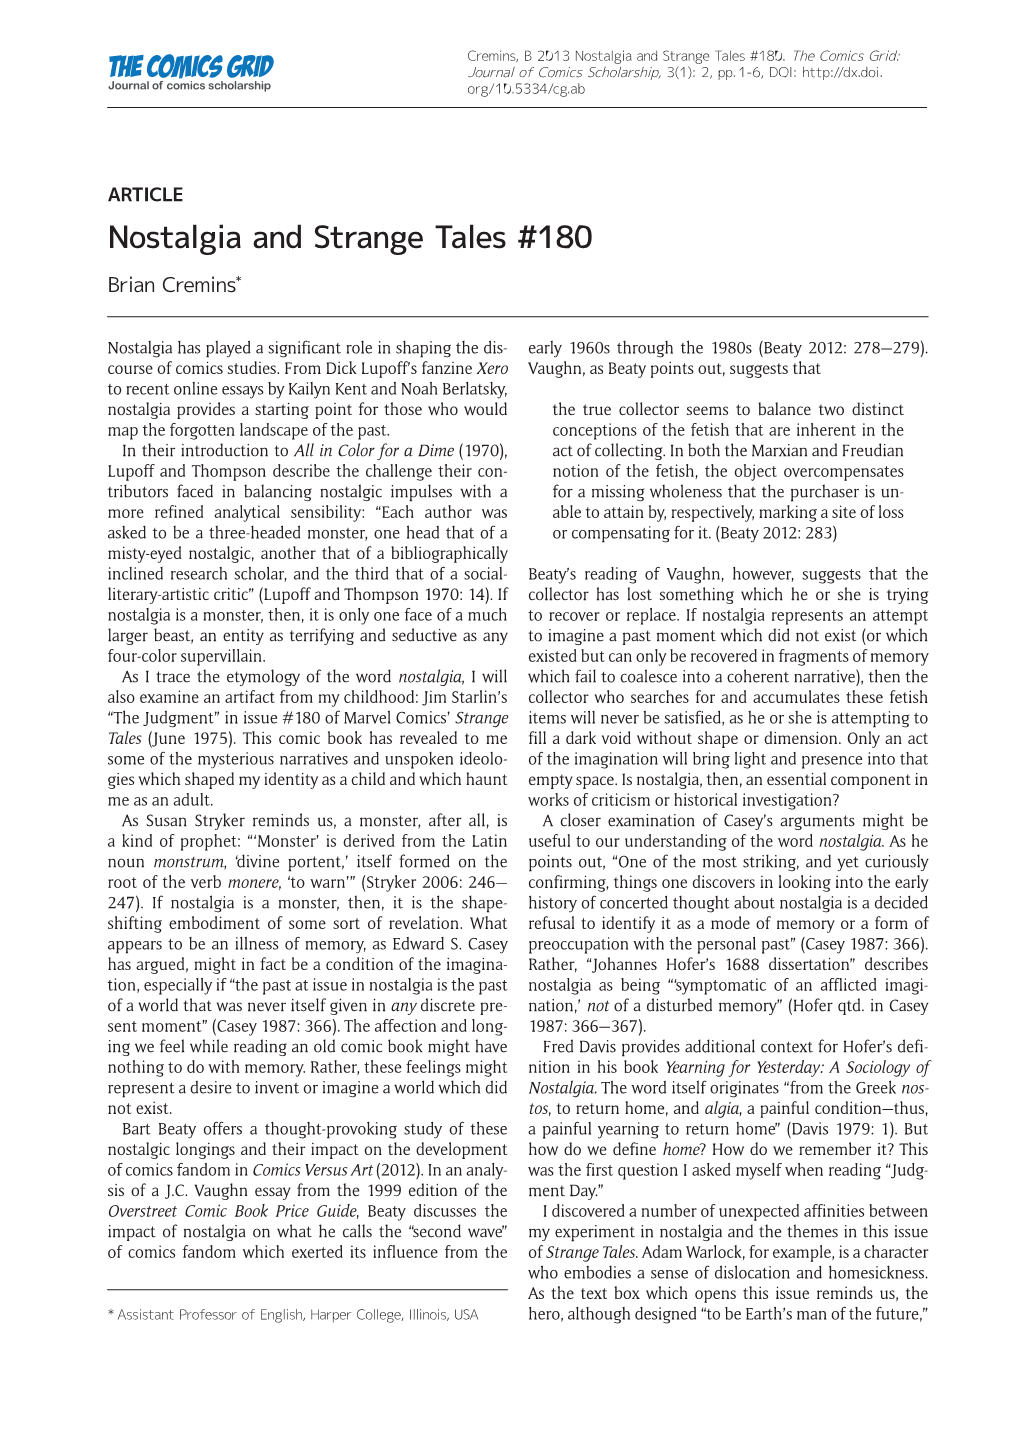 Nostalgia and Strange Tales #180